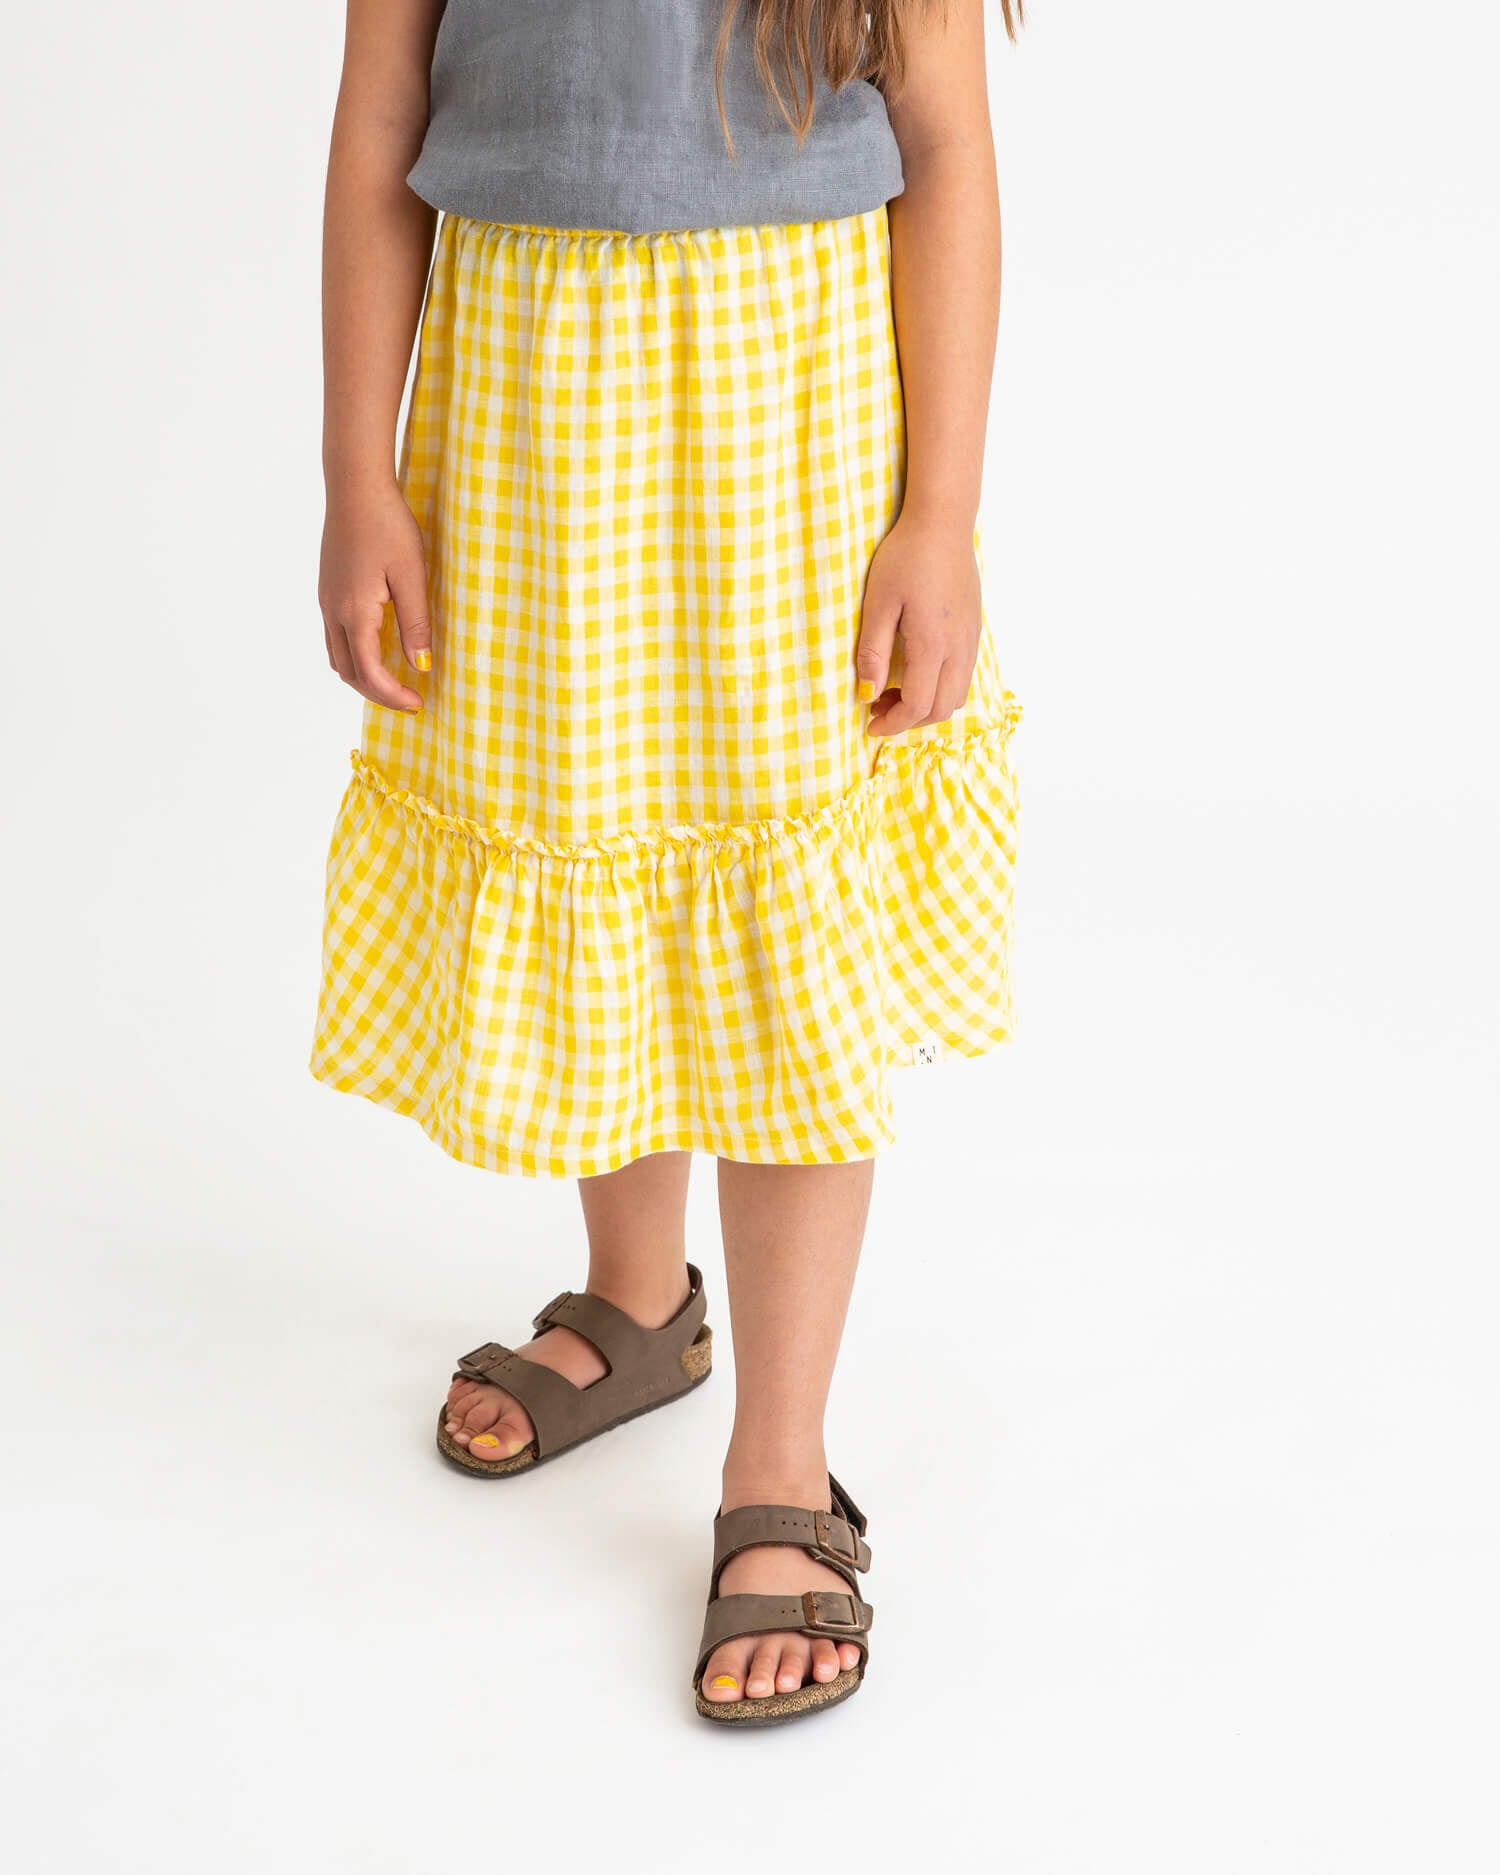 Ruffled Skirt yellow gingham